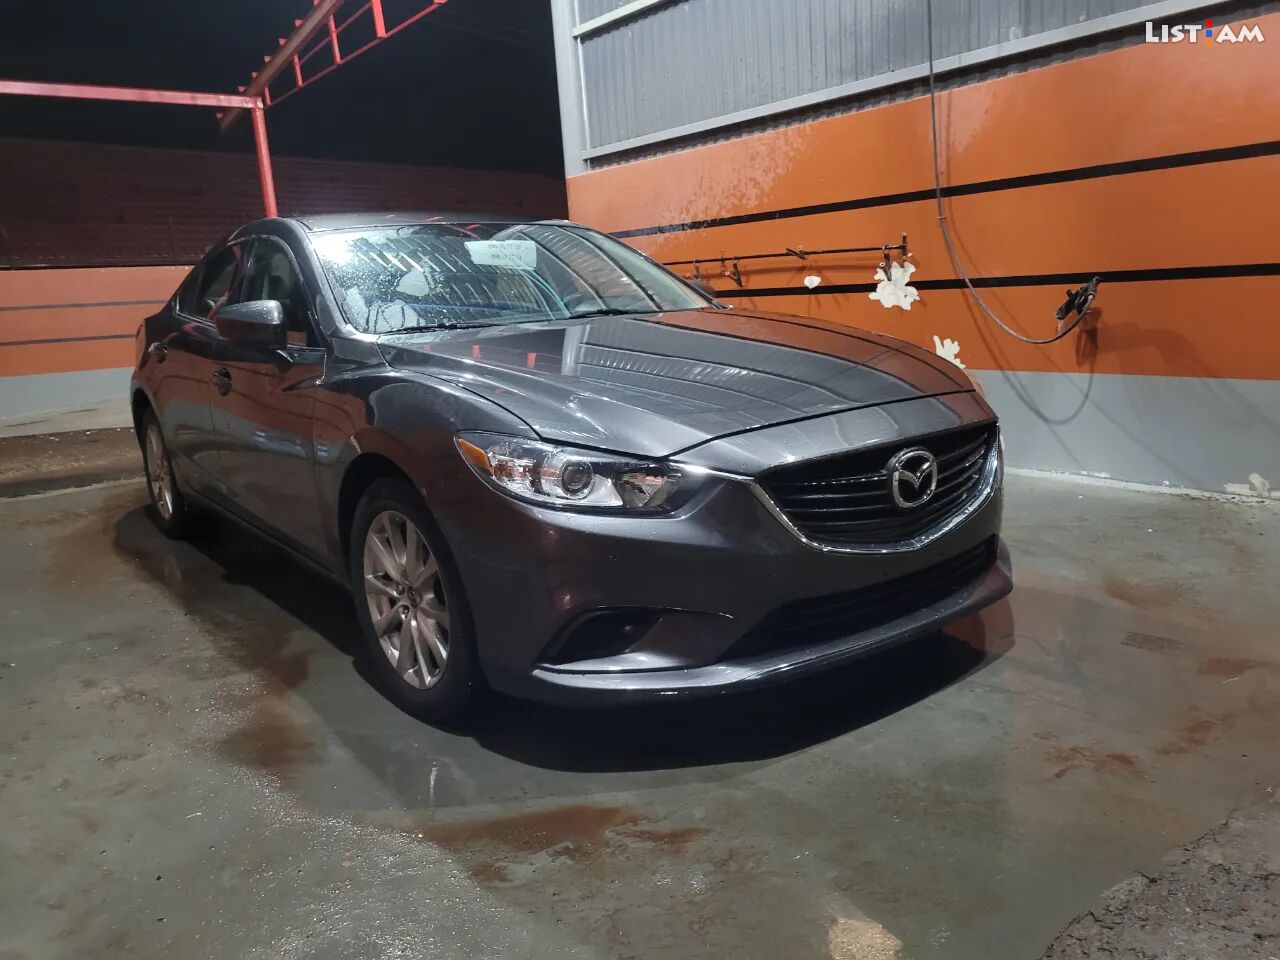 2016 Mazda 6, 2.5L